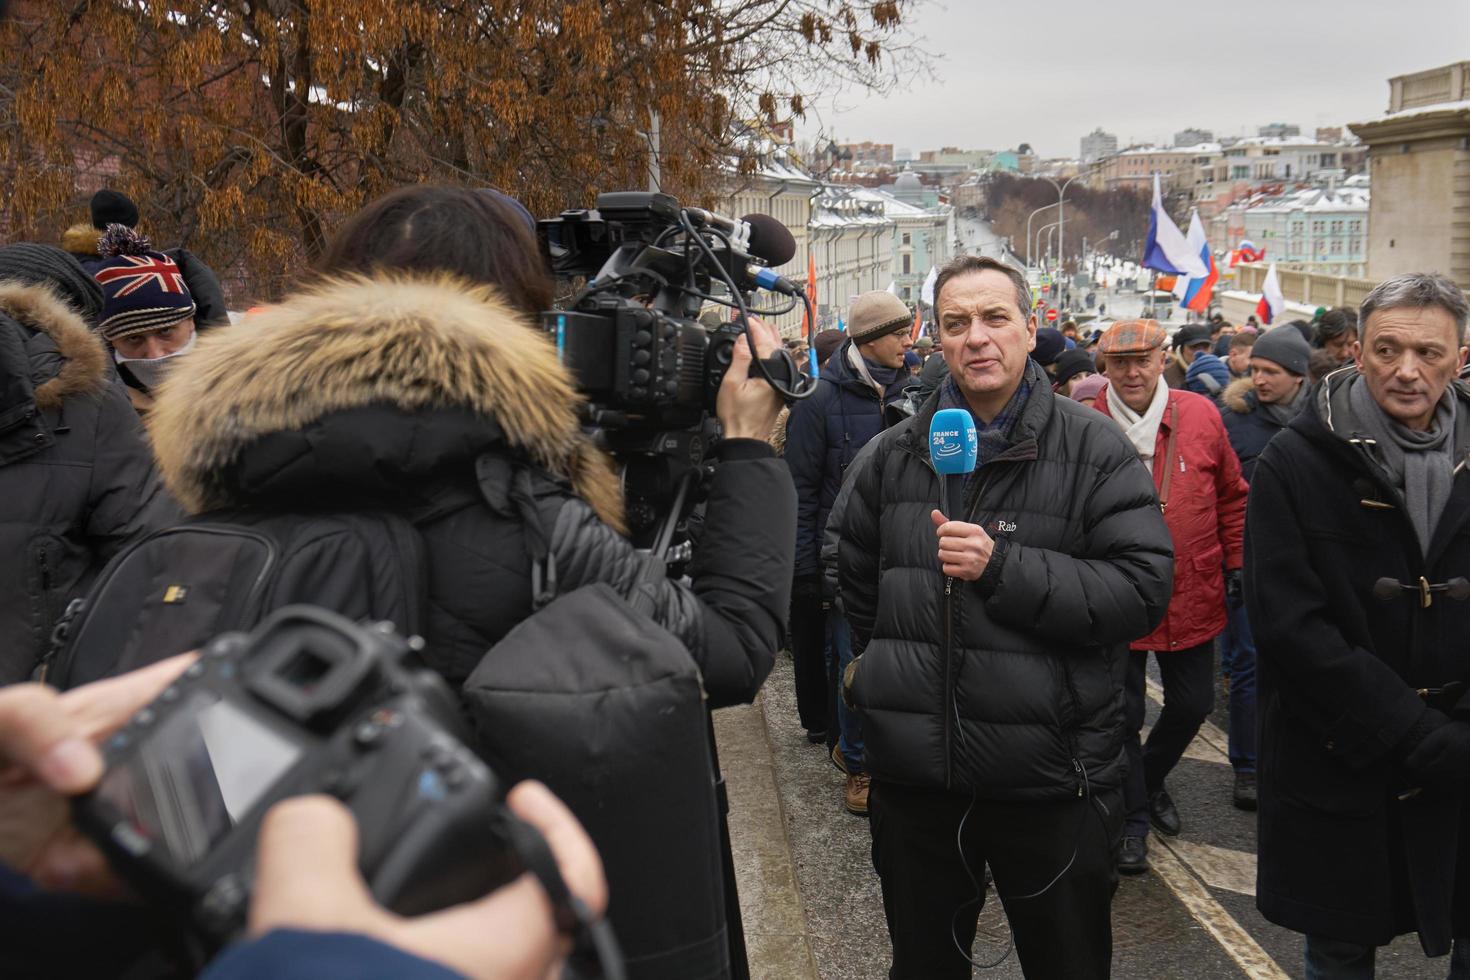 moskau, russland - 24. februar 2019. nemzow-gedenkmarsch. ausländischer Journalist mit Mikrofon berichtet von der Szene zur Digitalkamera foto